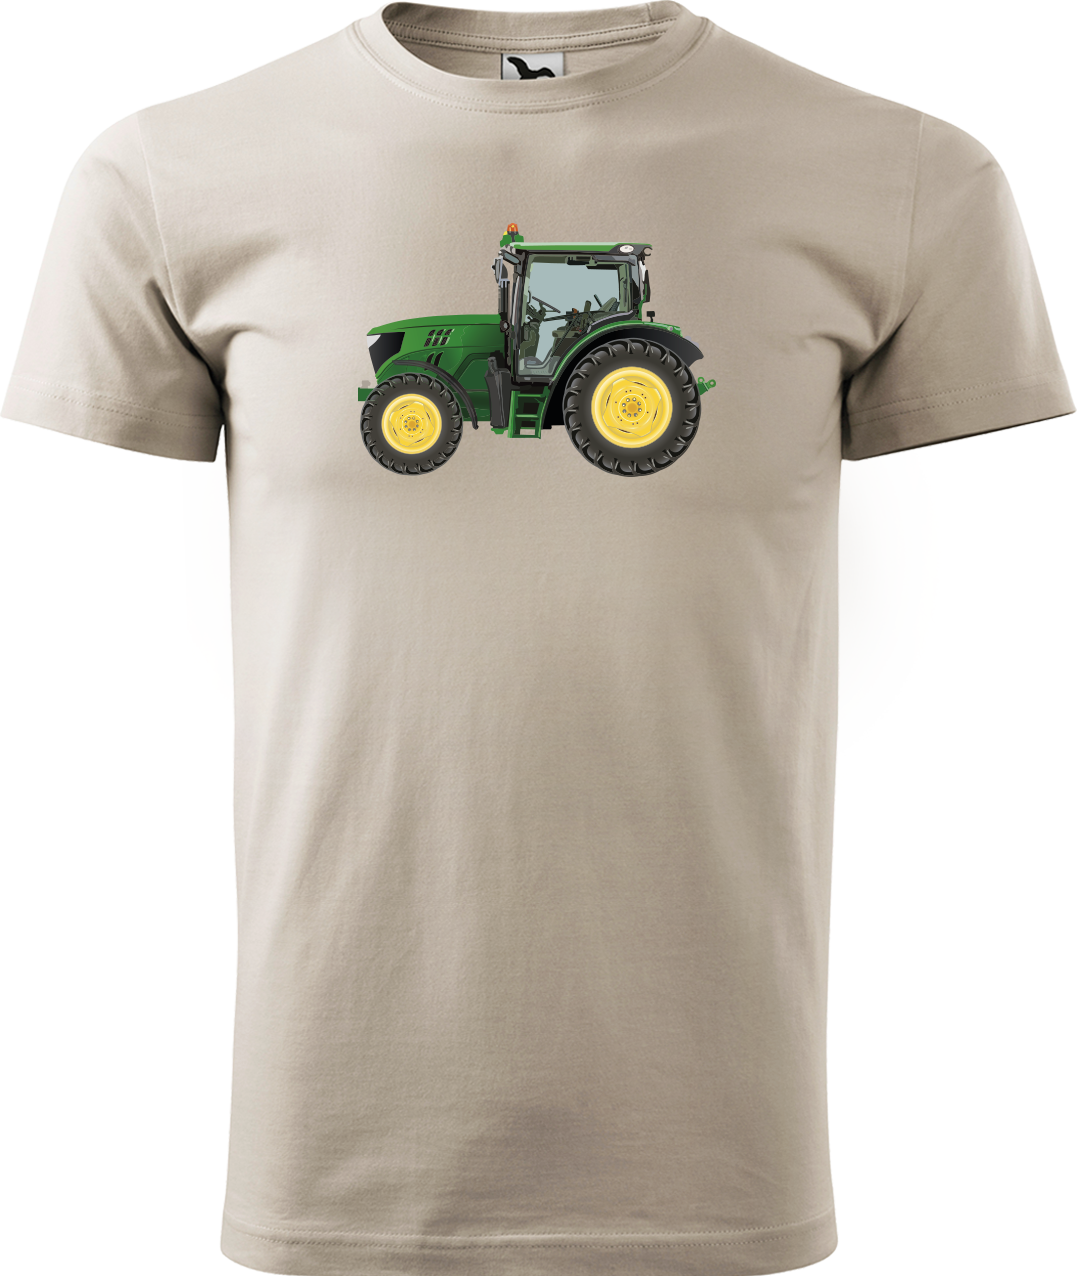 Tričko s traktorem - Zelený traktor Velikost: S, Barva: Béžová (51)